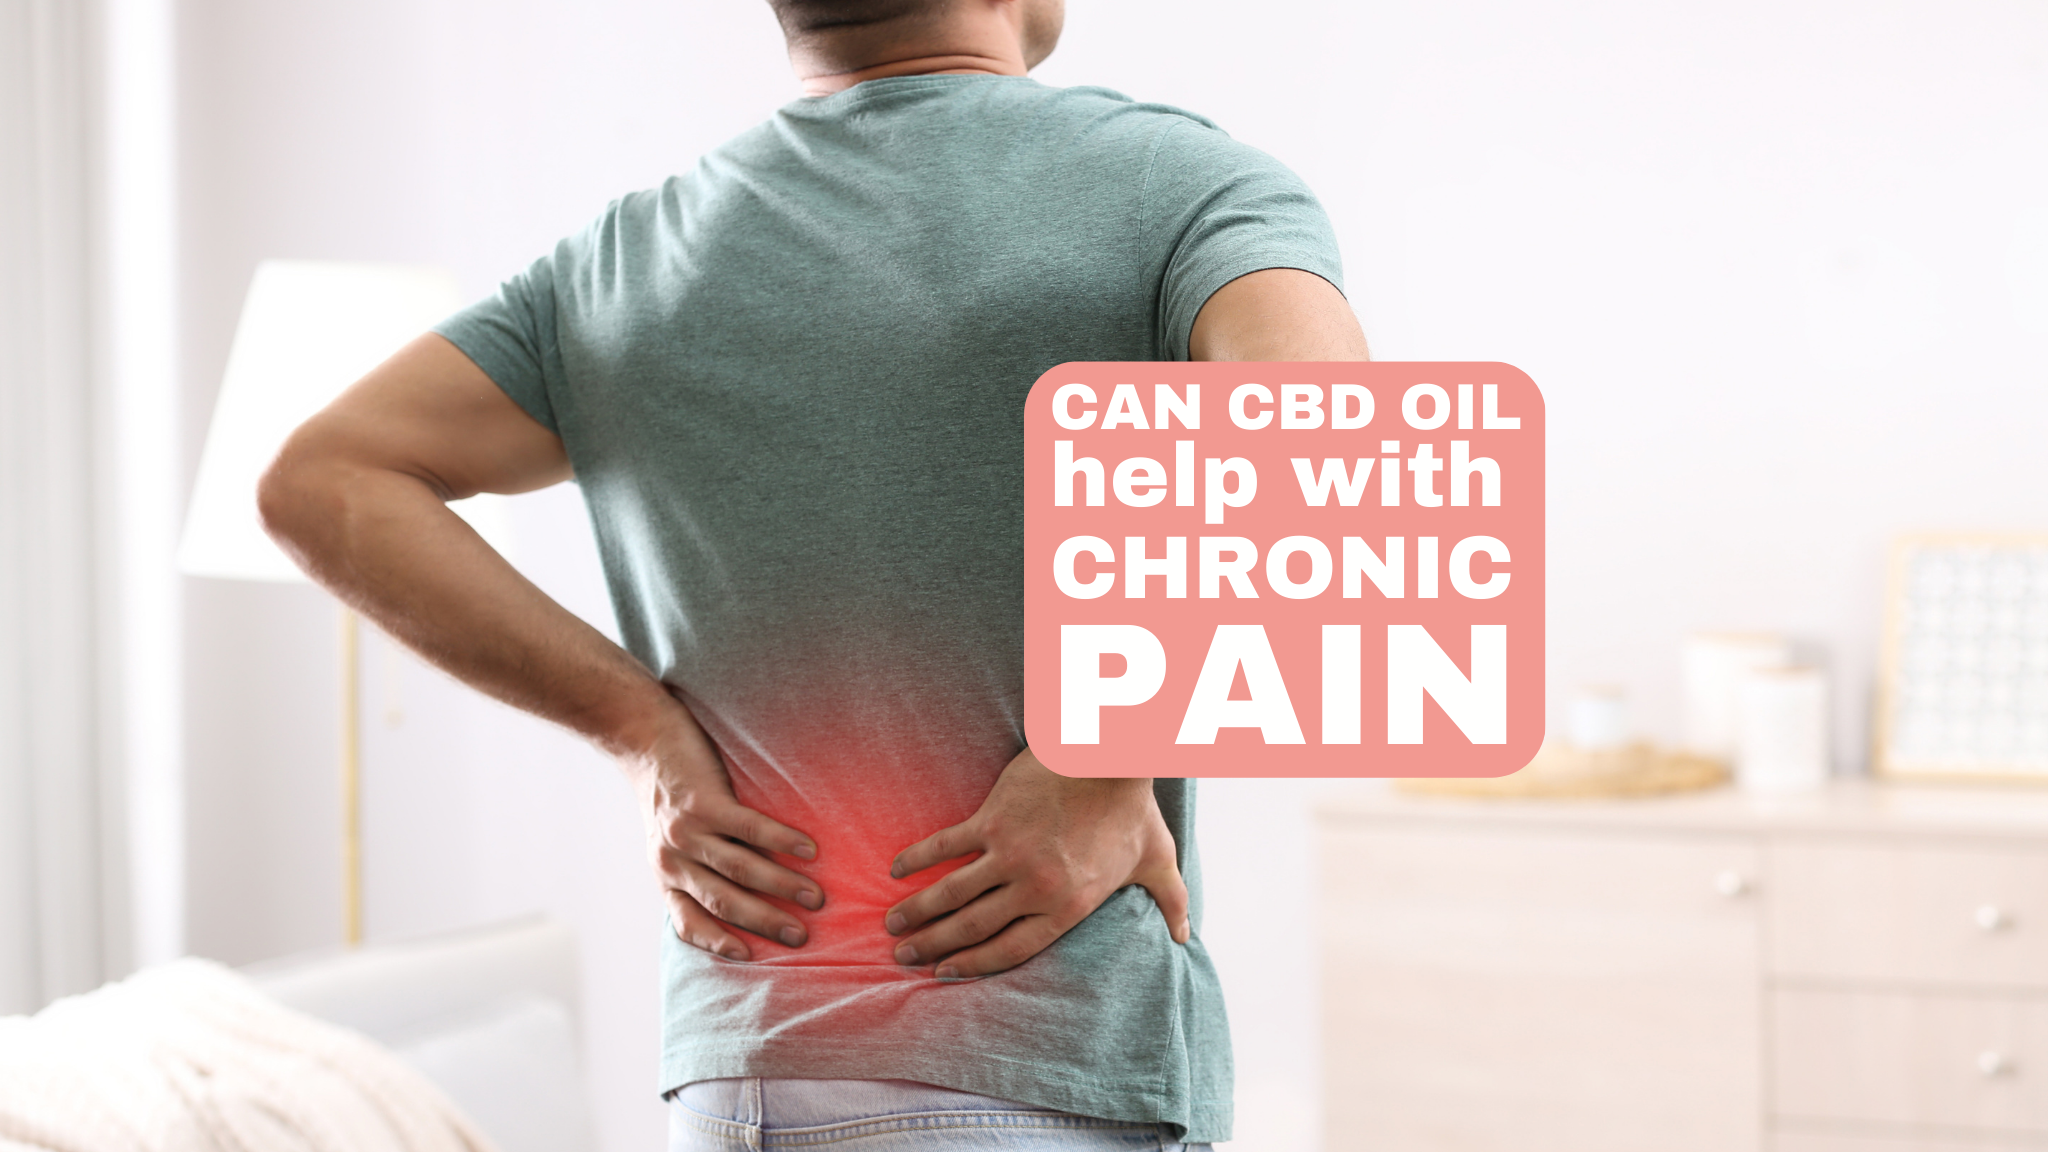 Ako môže CBD pomôcť pri chronickej bolesti: Hlboký ponor do výskumu potenciálu CBD ako prostriedku na zmiernenie bolesti a protizápalového účinku